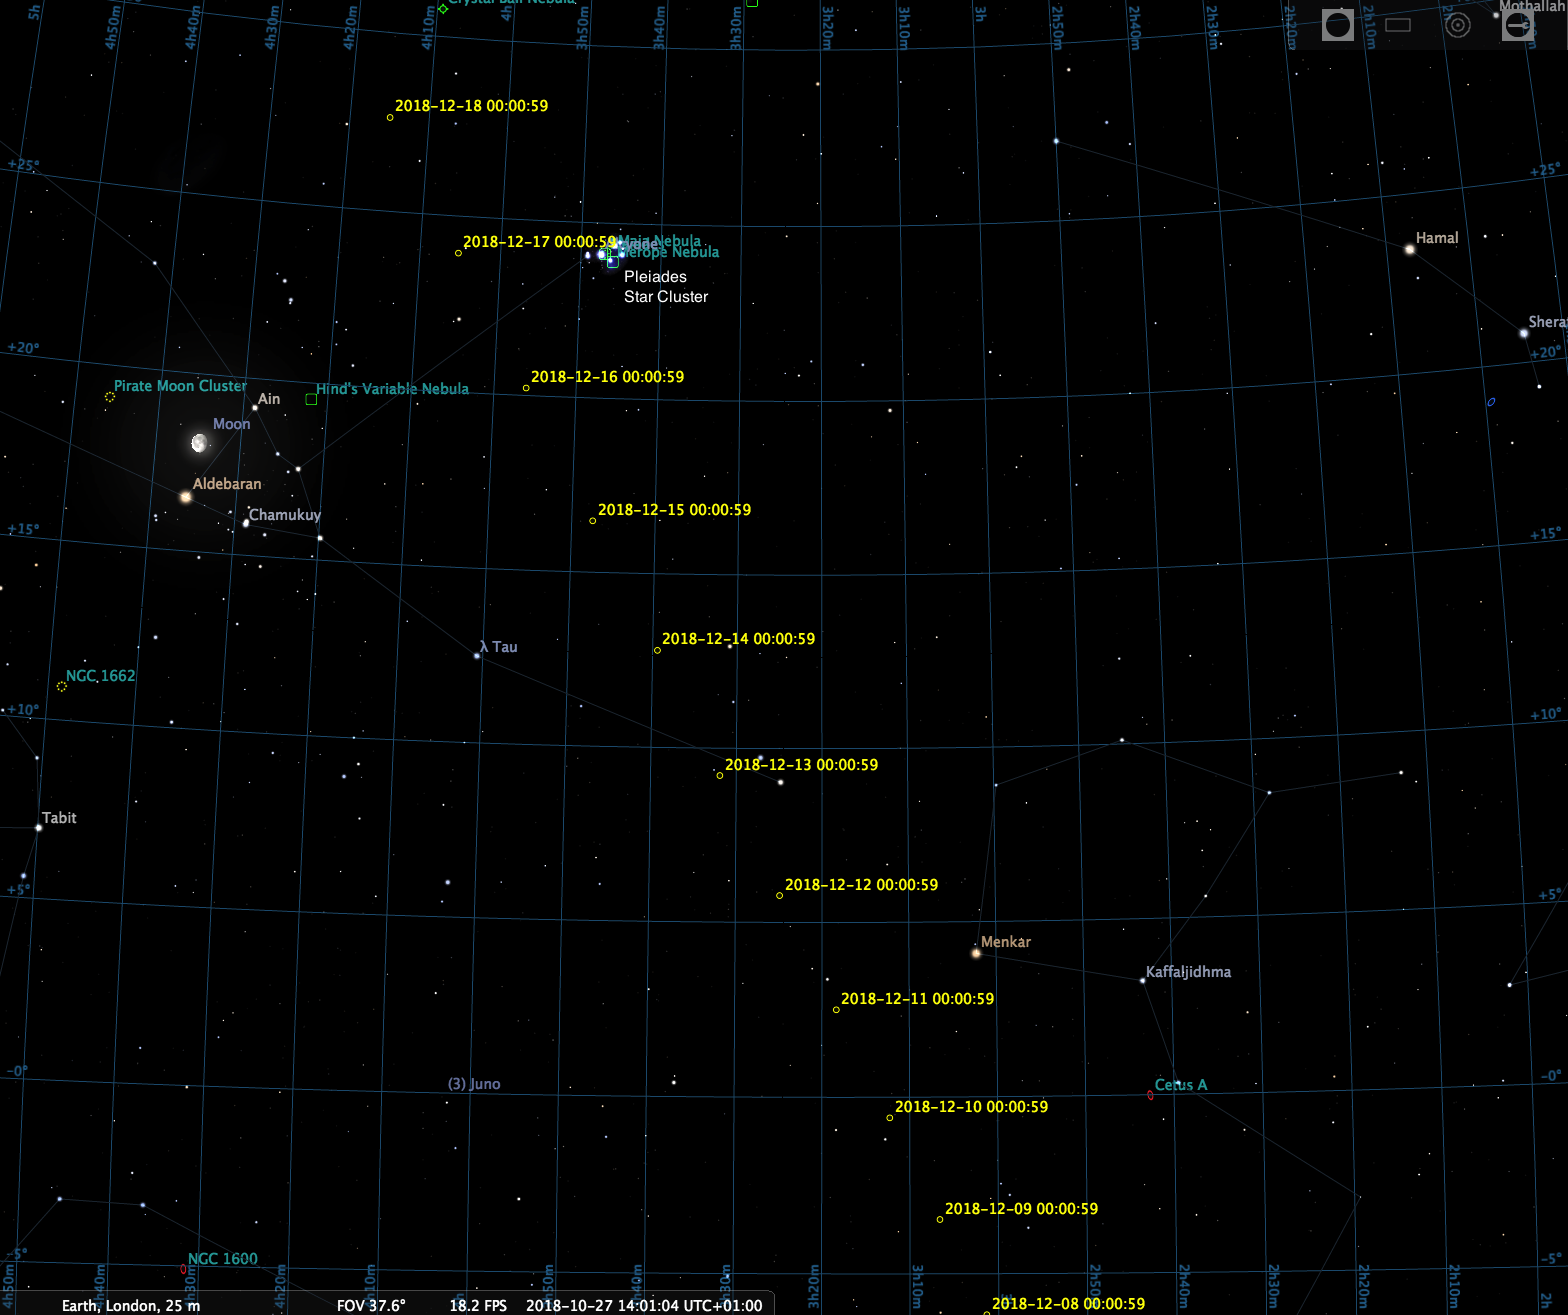 Comet 46p Wirtanen Finder Chart